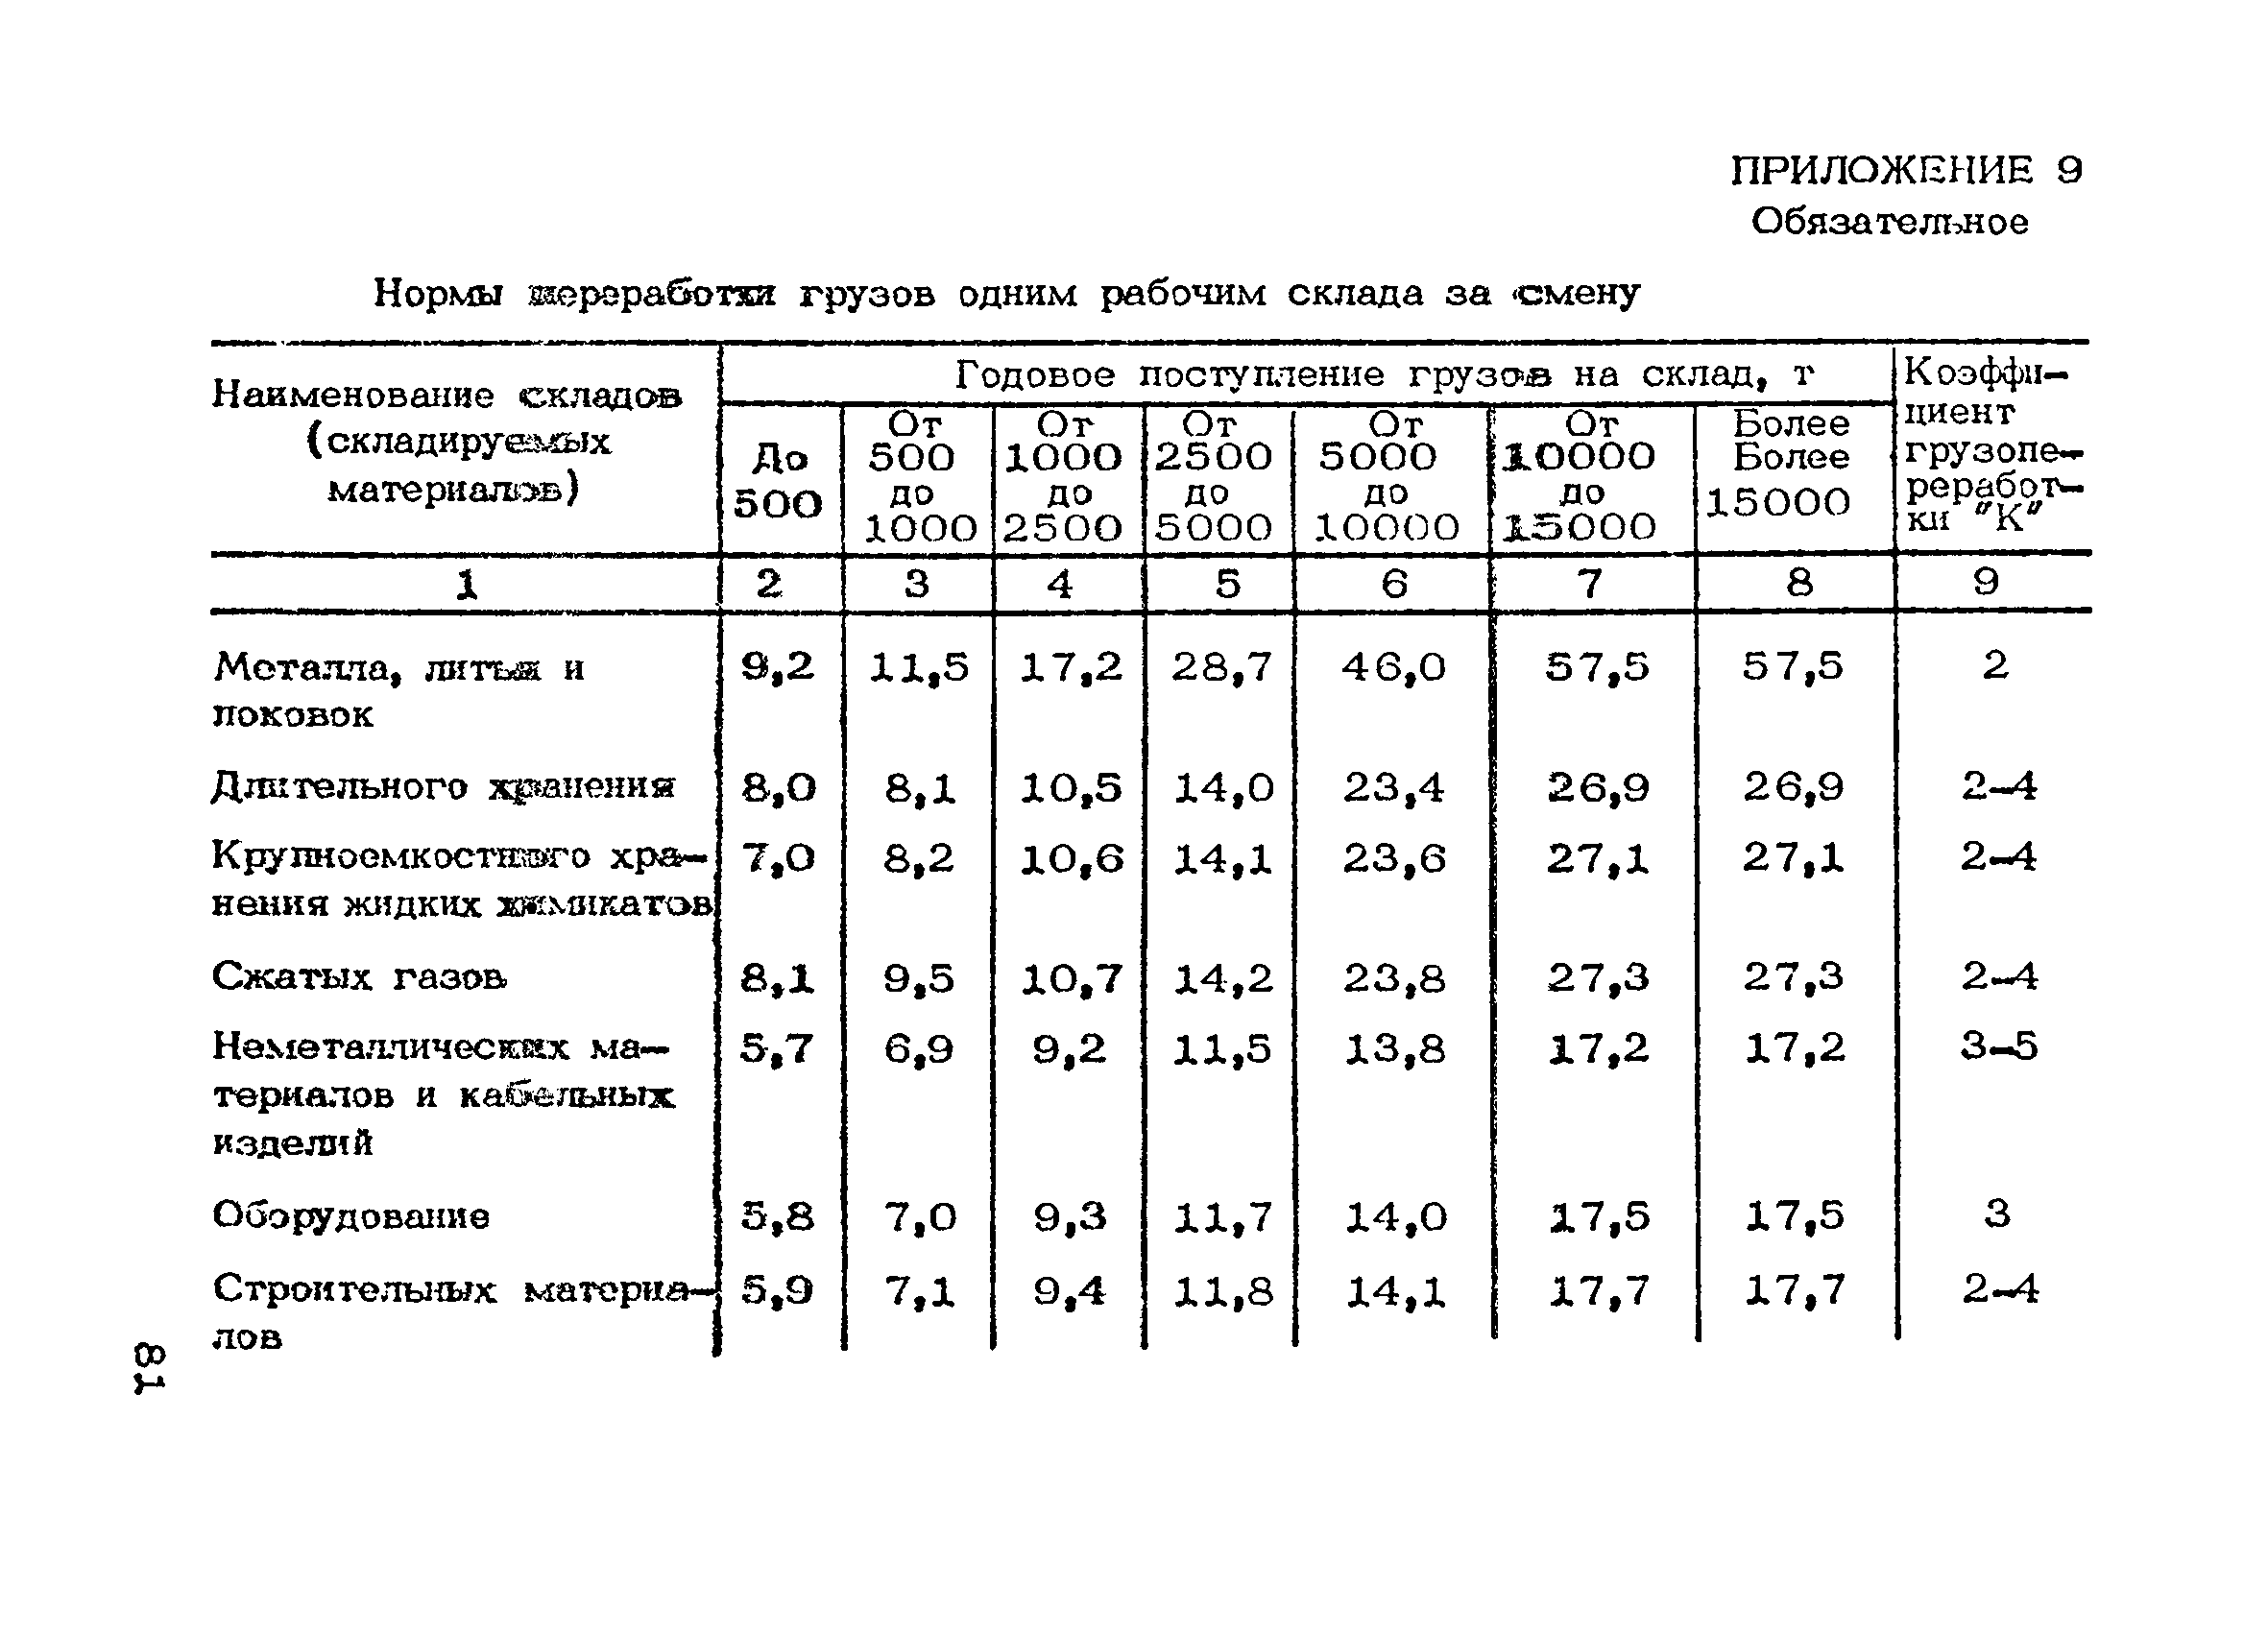 ОНТП 01-86/Минпромсвязь